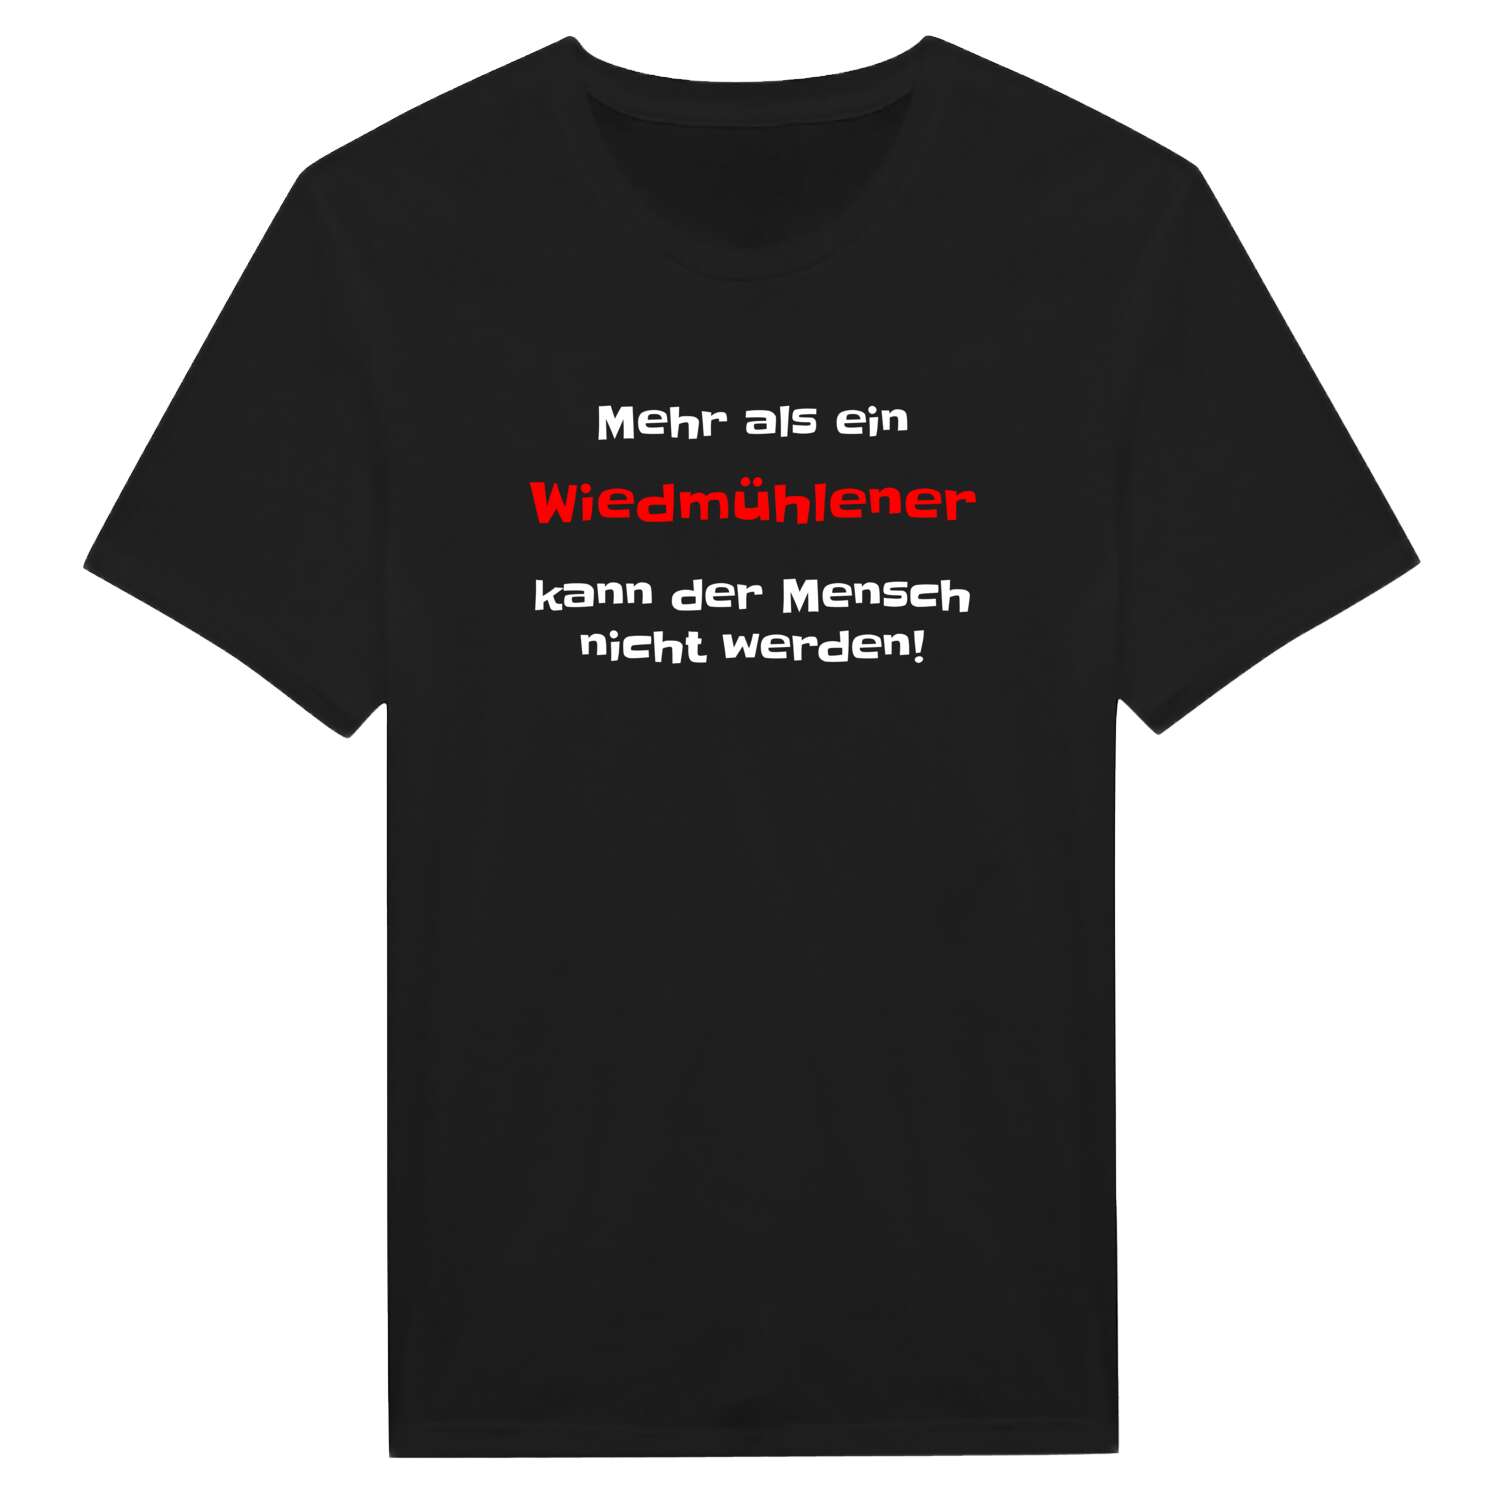 Wiedmühle T-Shirt »Mehr als ein«